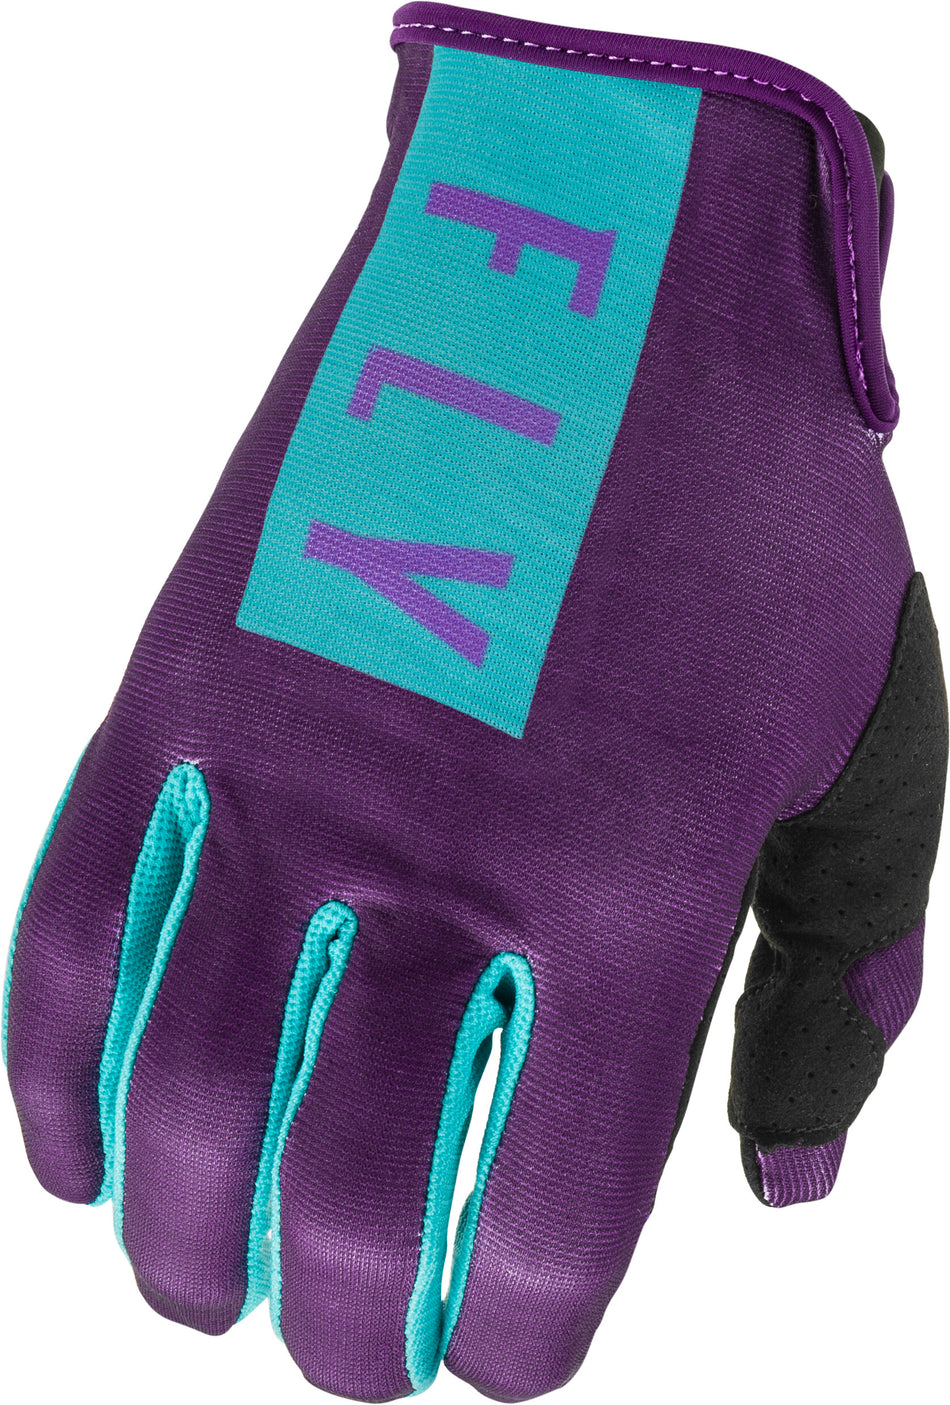 FLY RACING Women's Lite Gloves Purple/Blue Sz 09 374-61809